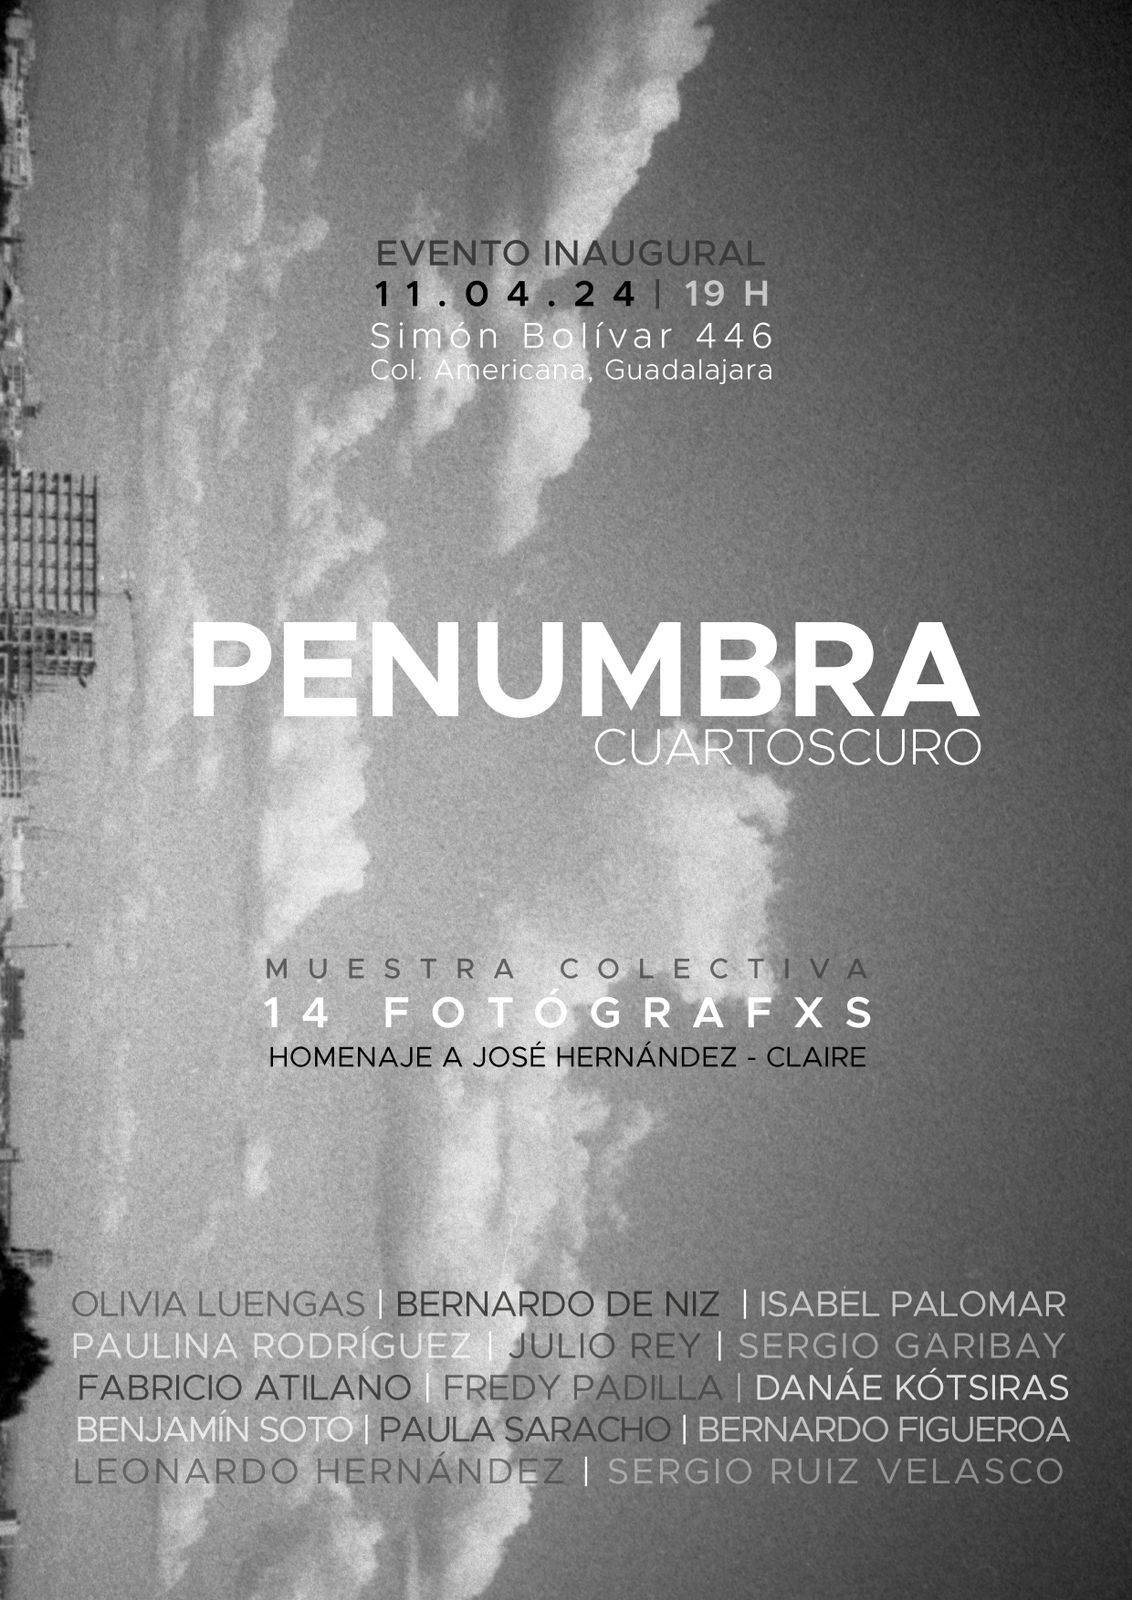 Fotógrafos rinden homenaje a José Hernández Claire en la inauguración de Penumbra, nuevo cuarto oscuro para promover la experiencia análoga